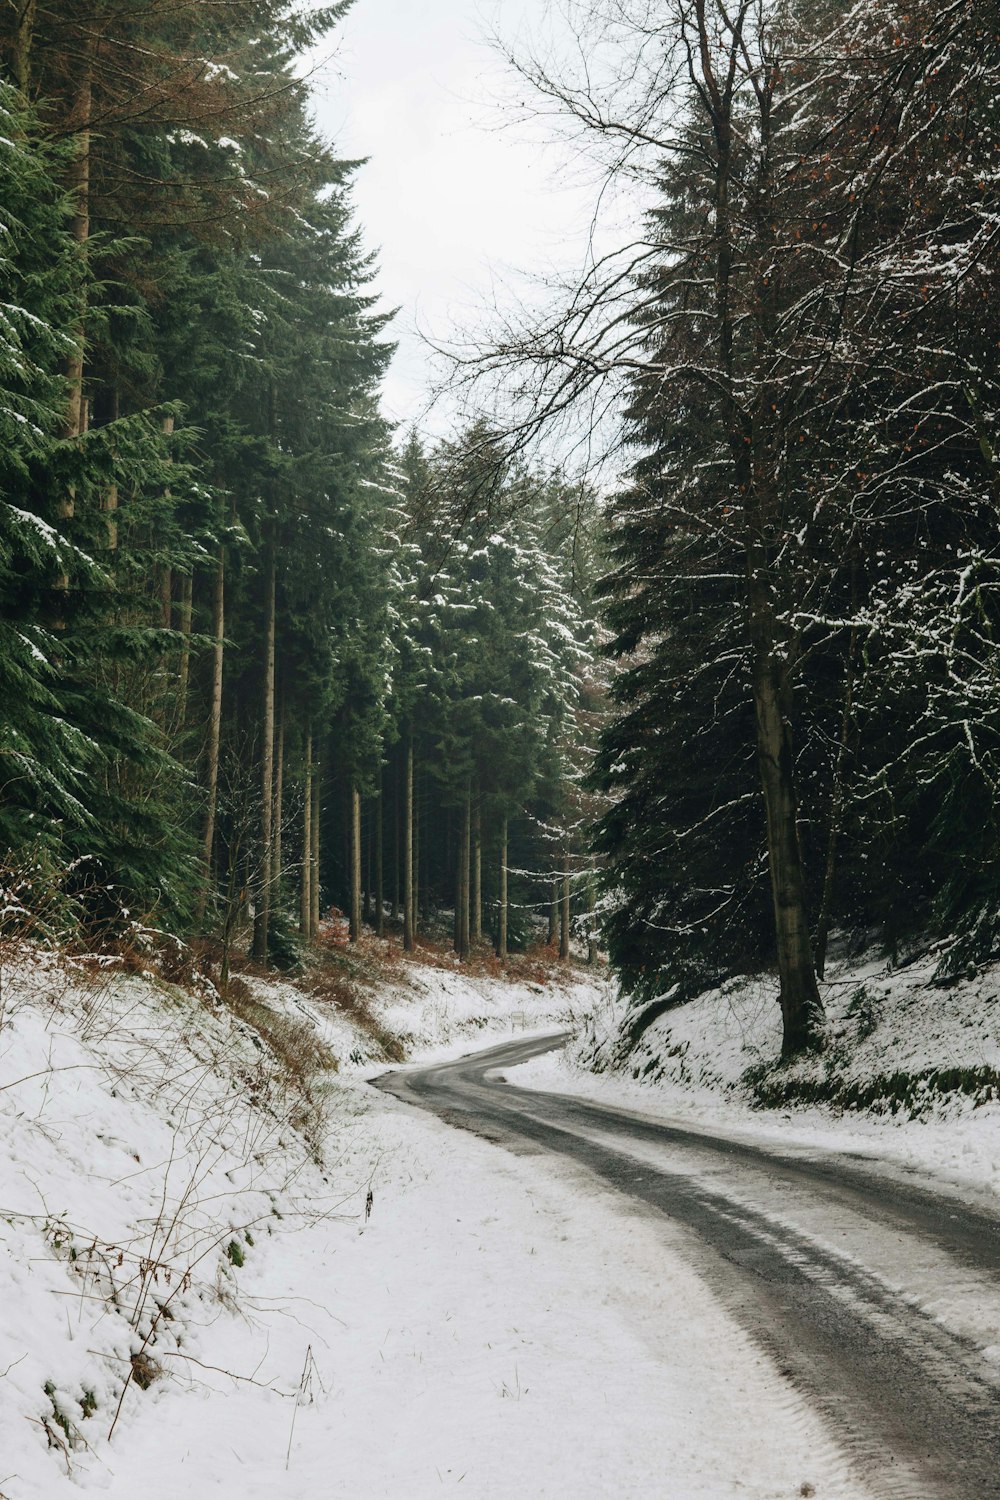 눈으로 덮인 숲 한가운데의 회색 도로